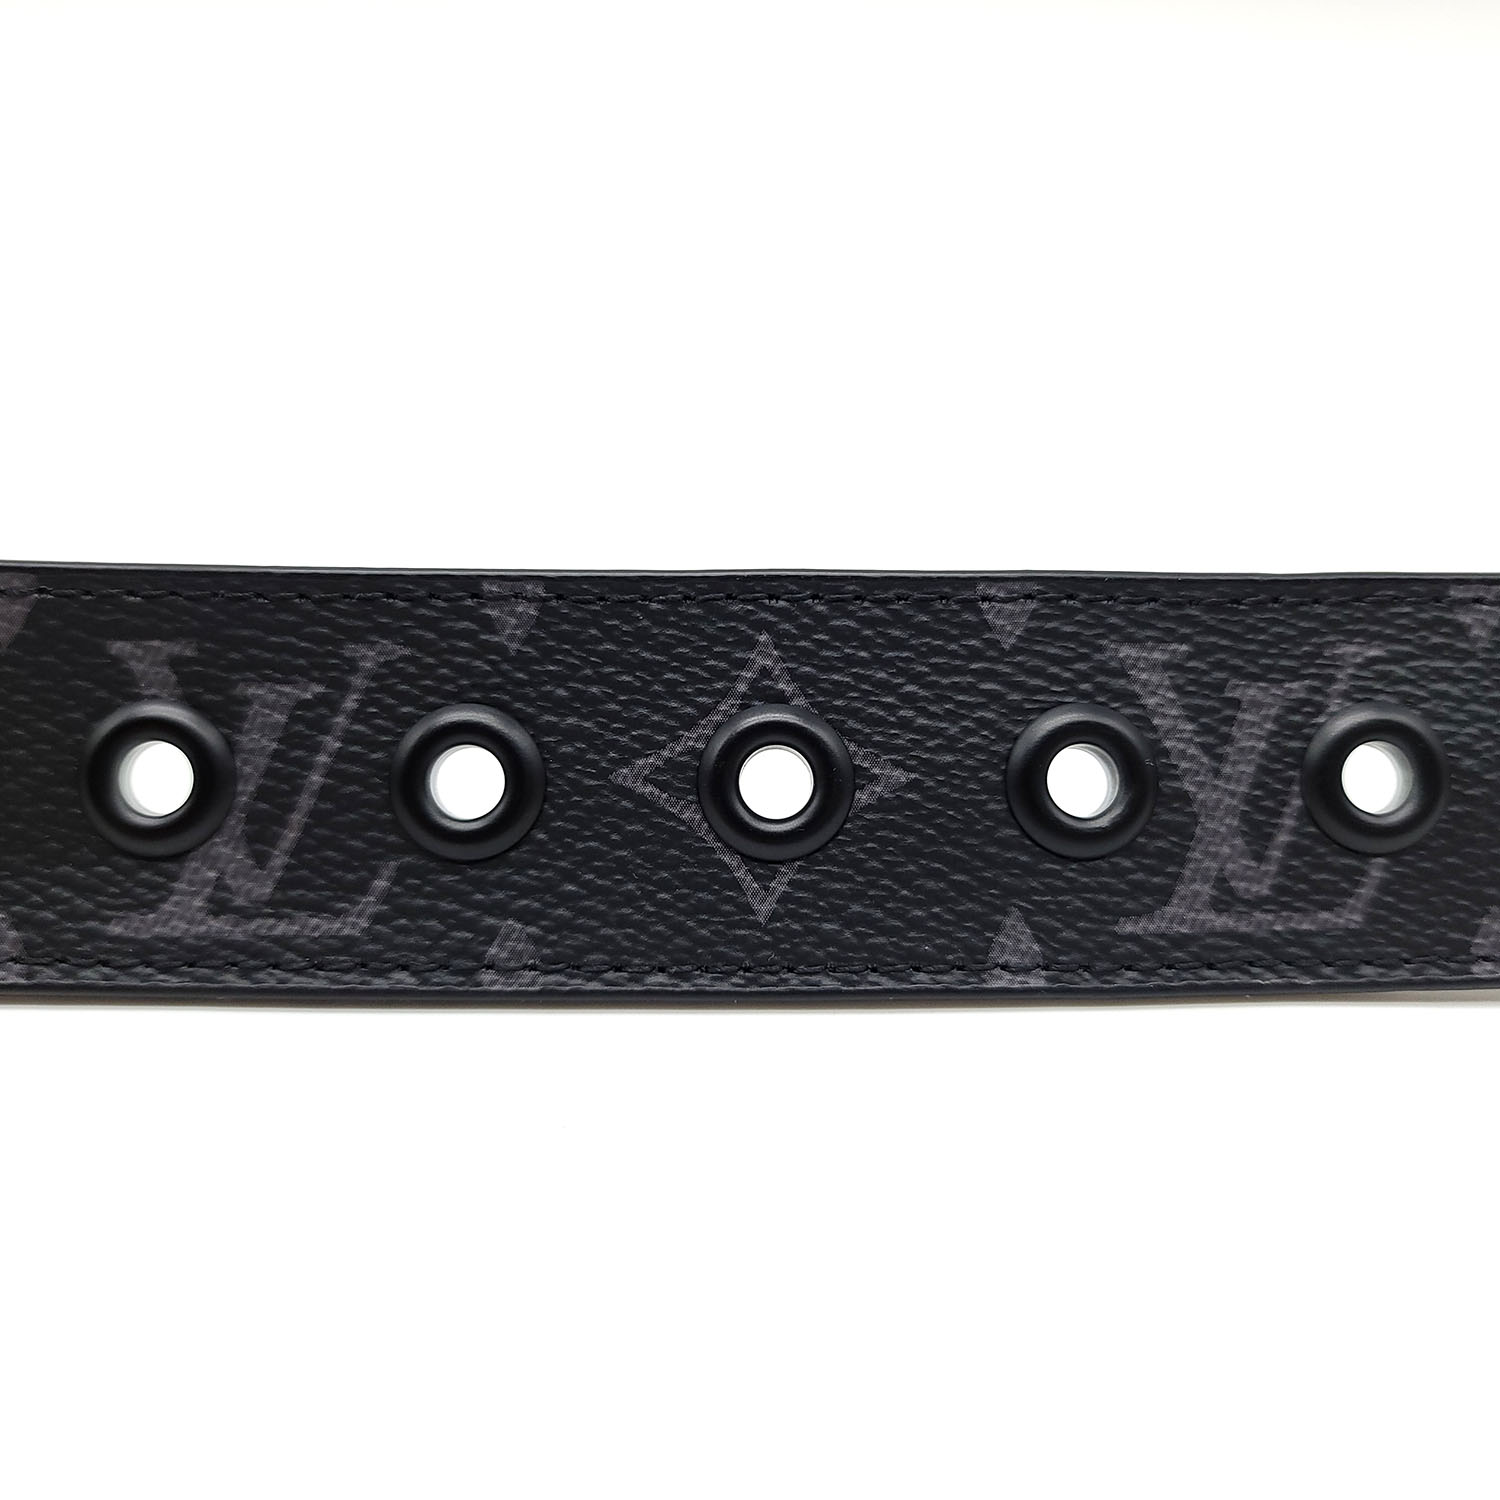 Louis Vuitton Signature 35mm Monogram Belt size 90/36